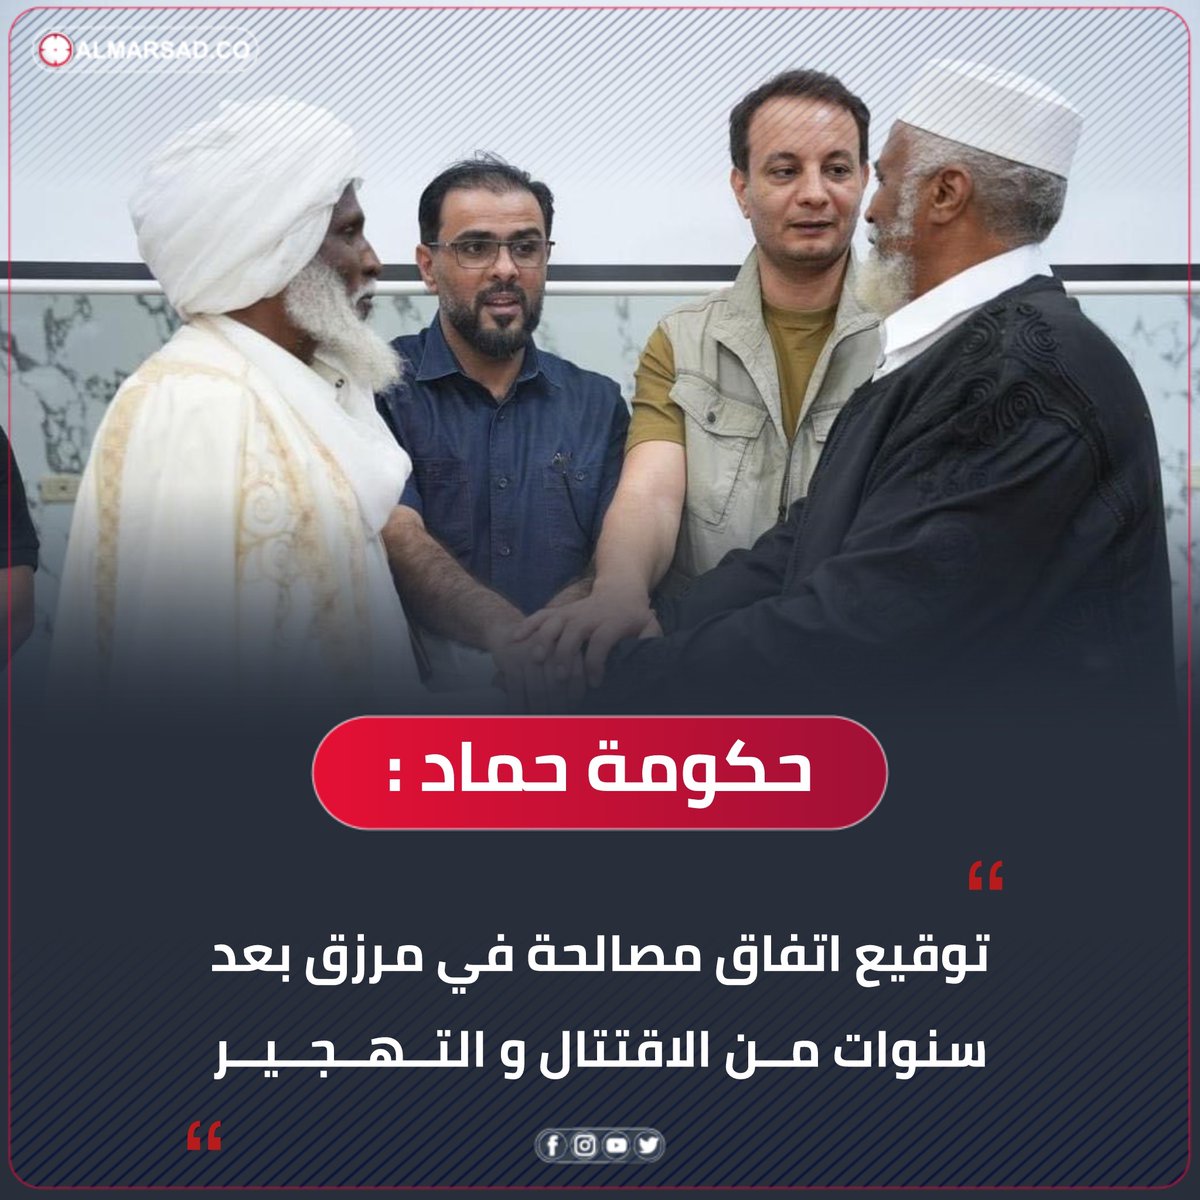 خبر | حكومة حماد تعلن توقيع اتفاق مصالحة بقيادته في #مرزق بعد سنوات من الاقتتال و التهجير بالمدينة. #ليبيا #المرصد ( المكتب الإعلامي )